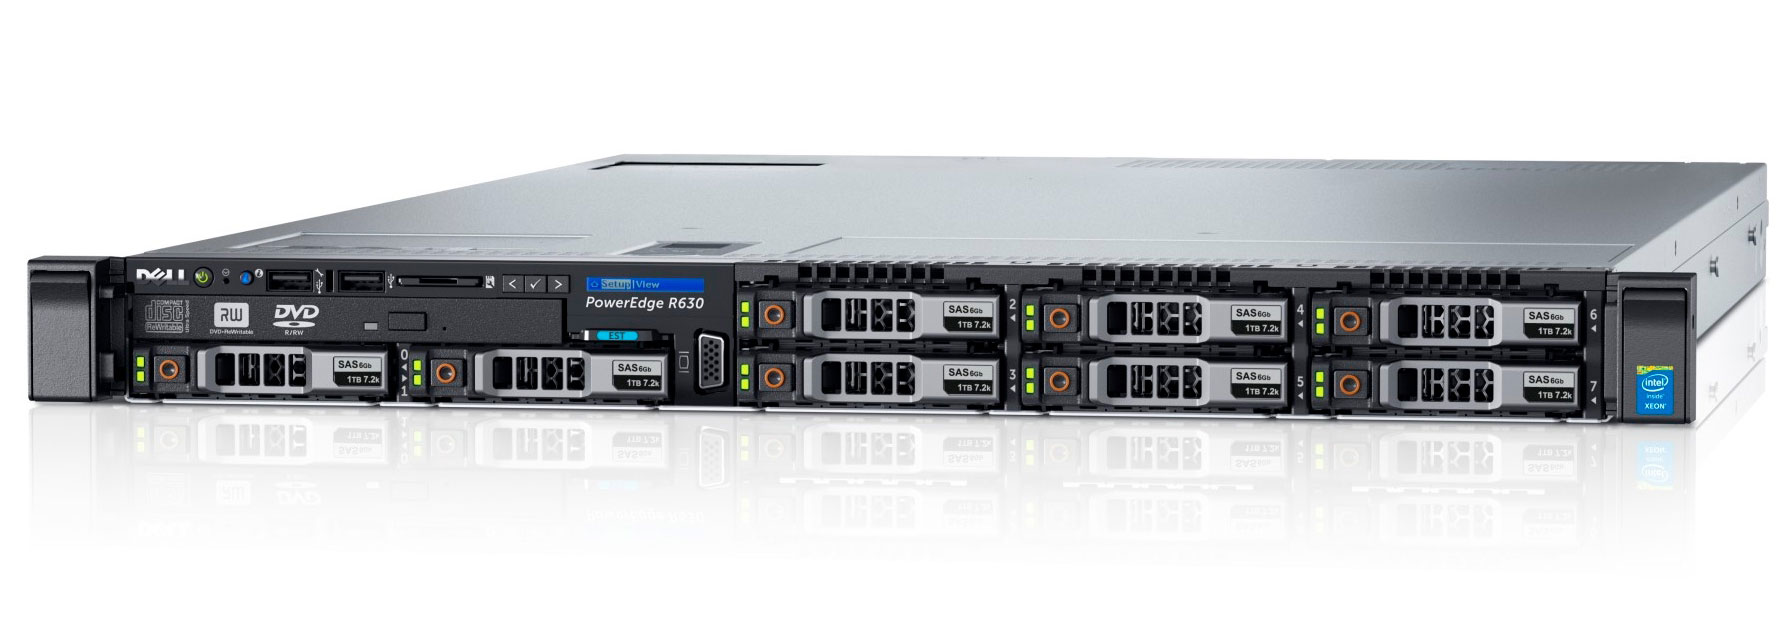 Подробное фото Сервер DELL PowerEdge R630 2x Xeon E5-2637v3 64Gb 2133P DDR4 8x noHDD 2.5" SAS SAS RAID Perc H730, 1024Mb, 2*PSU